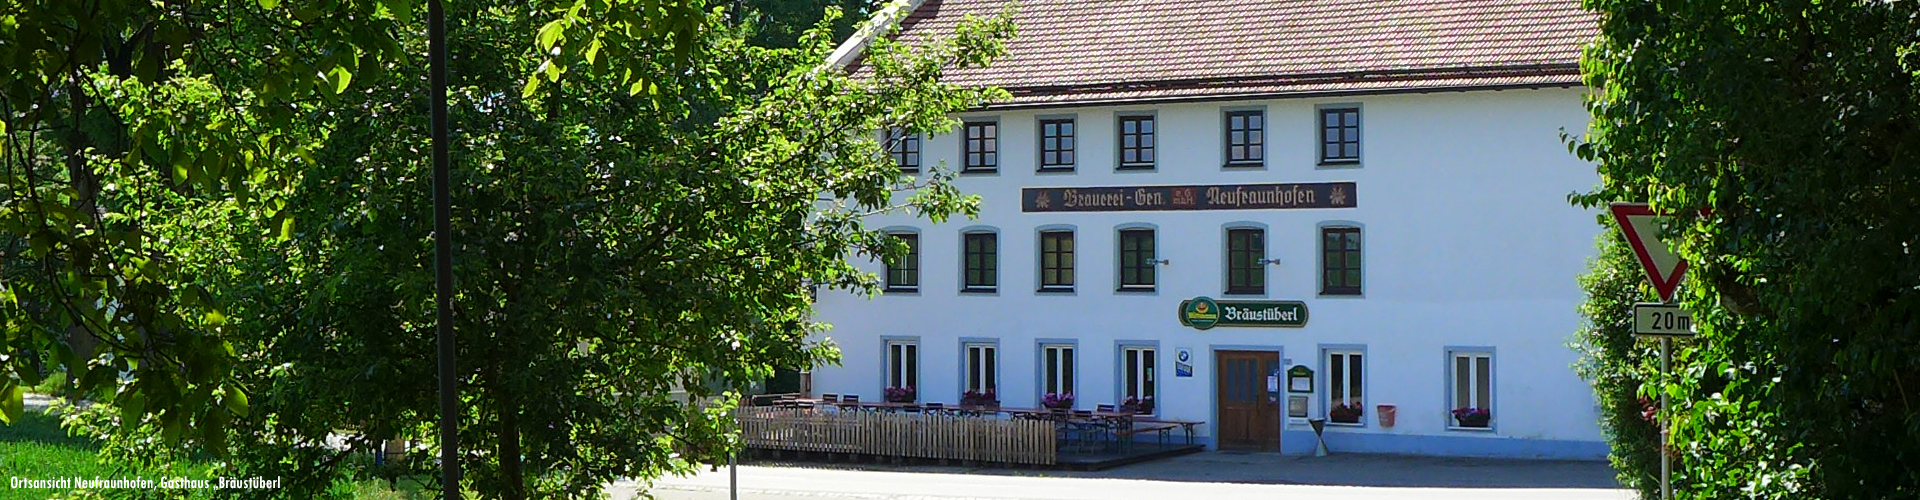 Blick auf die "Dorfschänke" Neufraunhofen